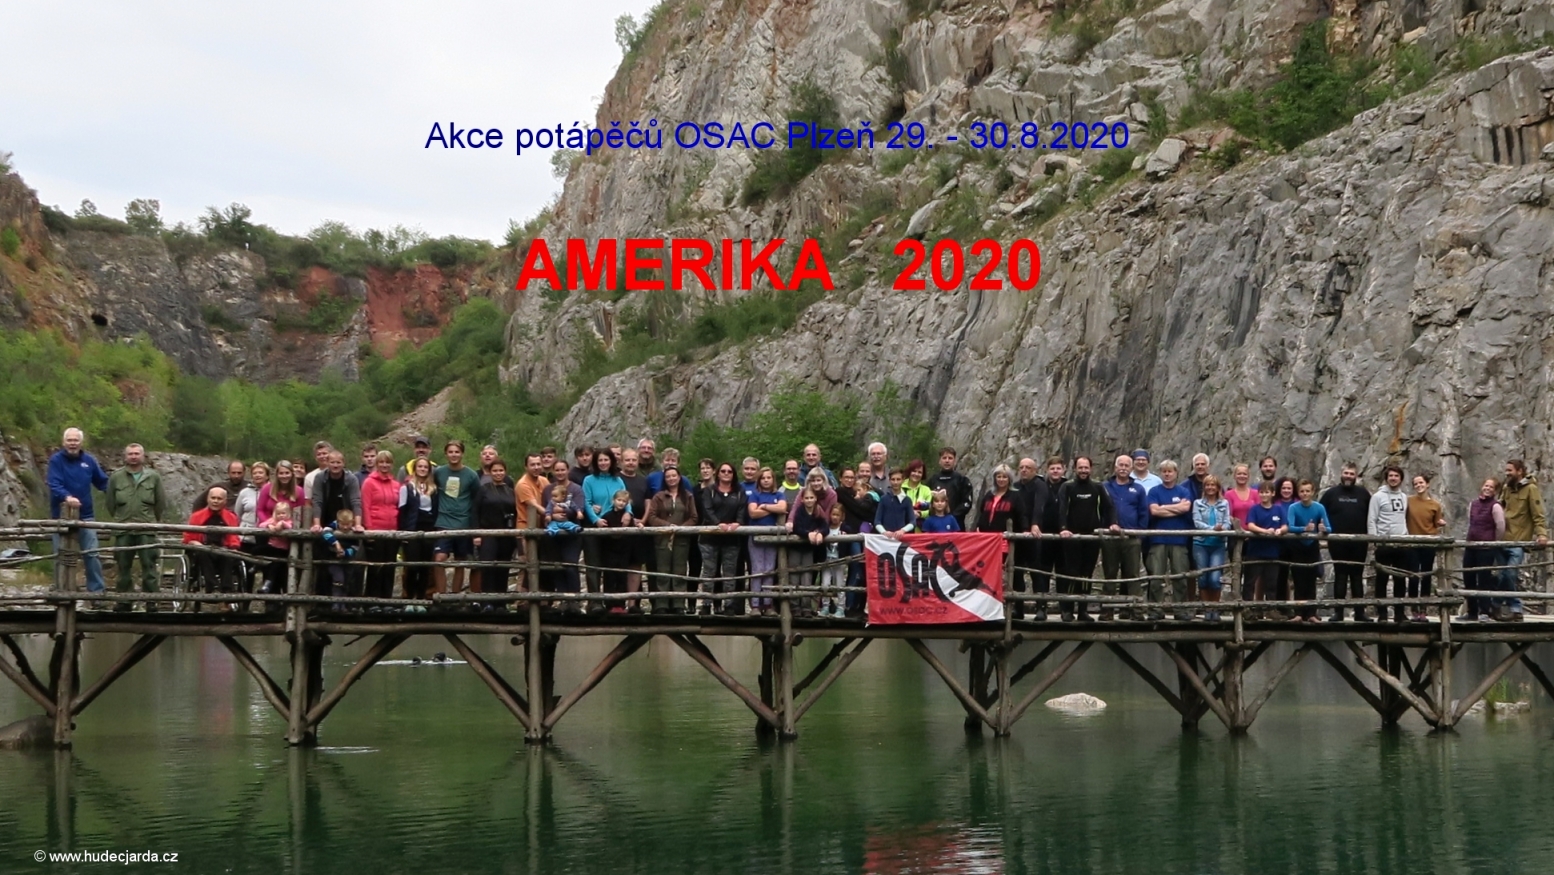 Právě si prohlížíte Super akce potápěčů OSAC:   AMERIKA 29. – 30.8.2020